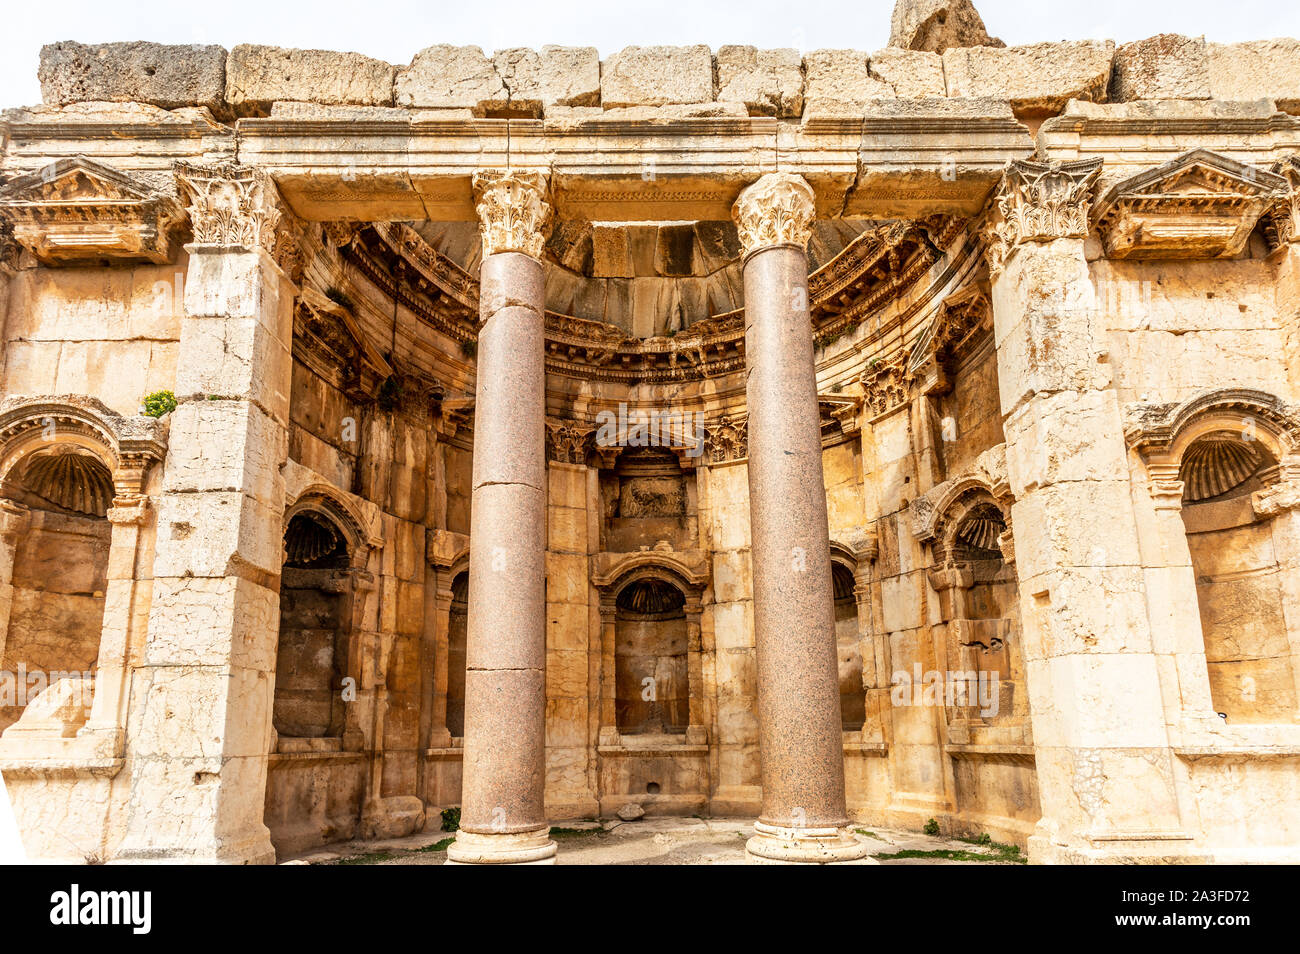 Alten verfallenen Mauern und Säulen von Grand Court des Jupiters Tempel, Beqaa Tal, Baalbek, Libanon Stockfoto